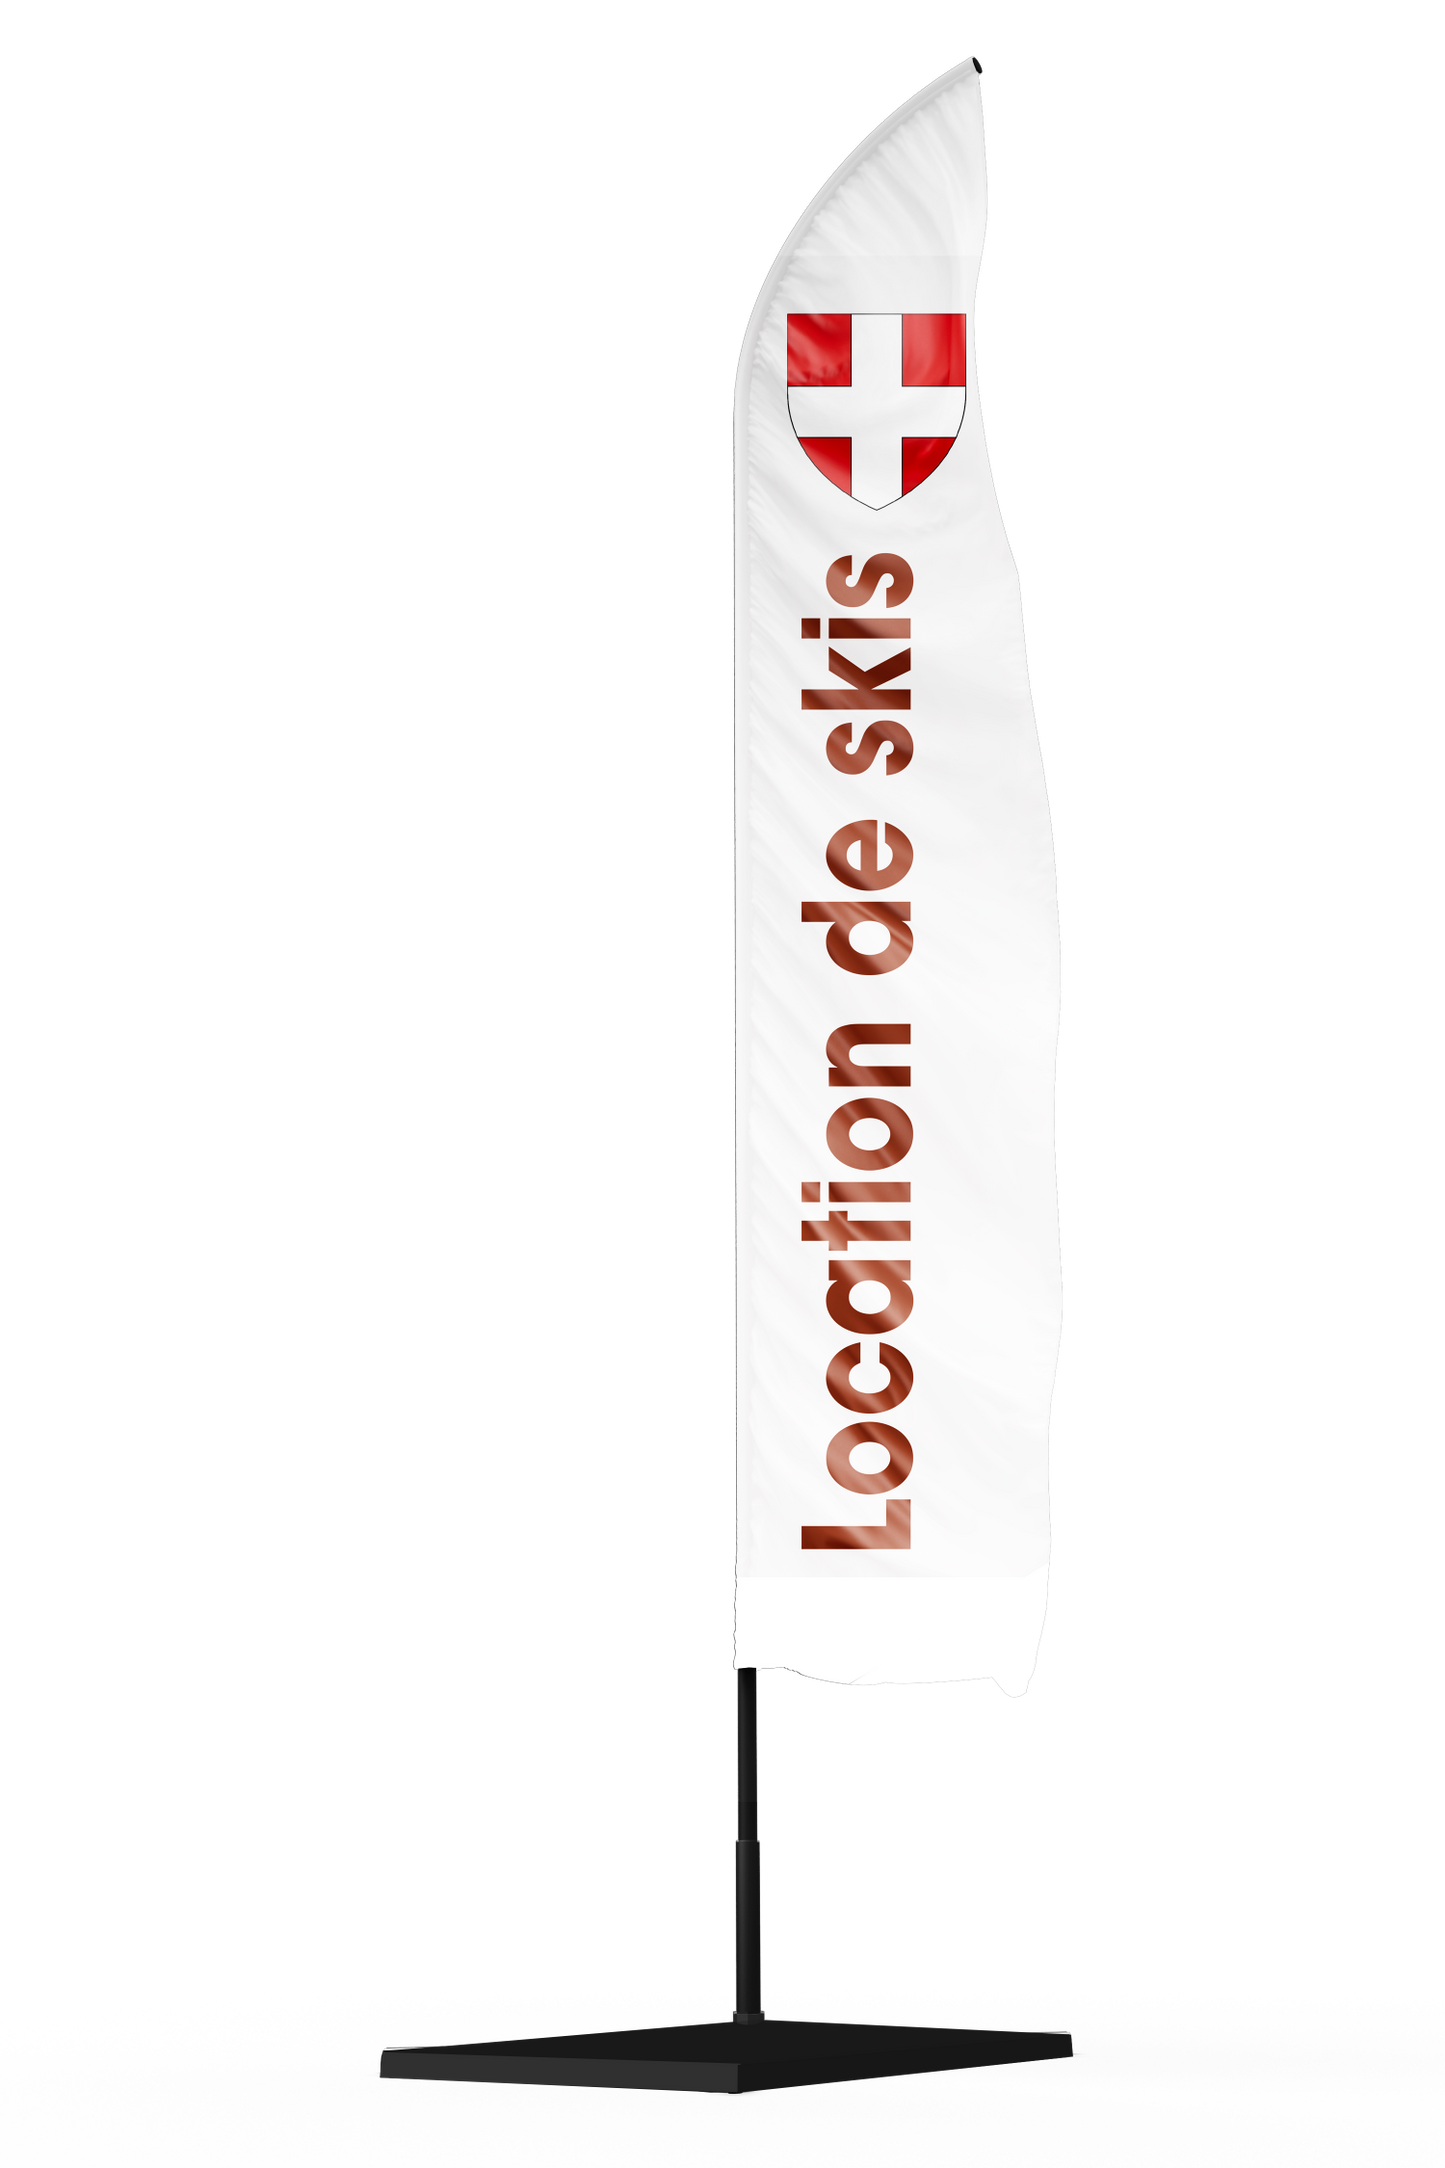 drapeau oriflamme publicitaire location de skis avec un drapeau de la Savoie en haut de la flamme